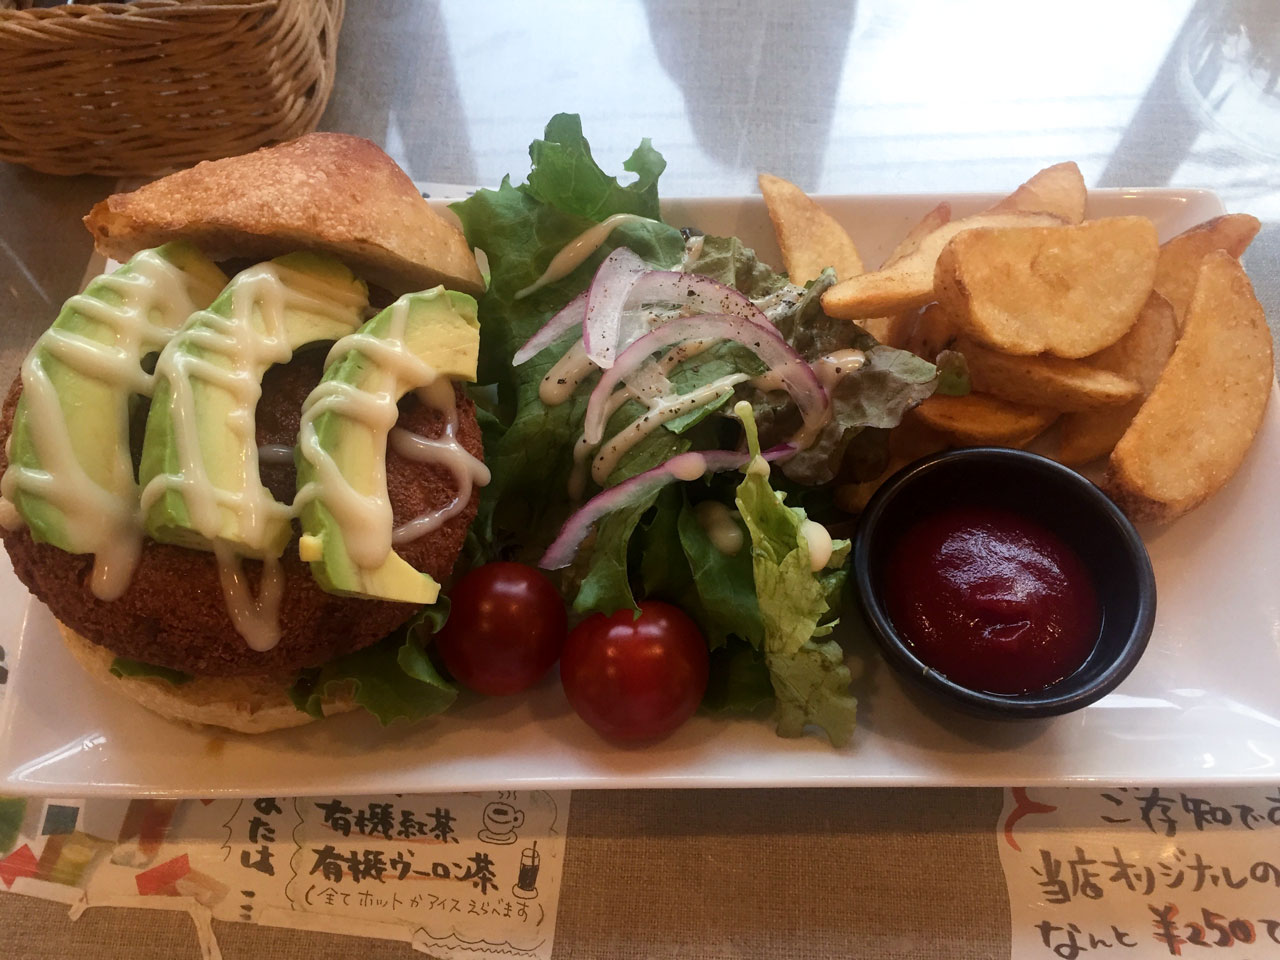 vegetarian burger from mumokuteki in kyoto japan